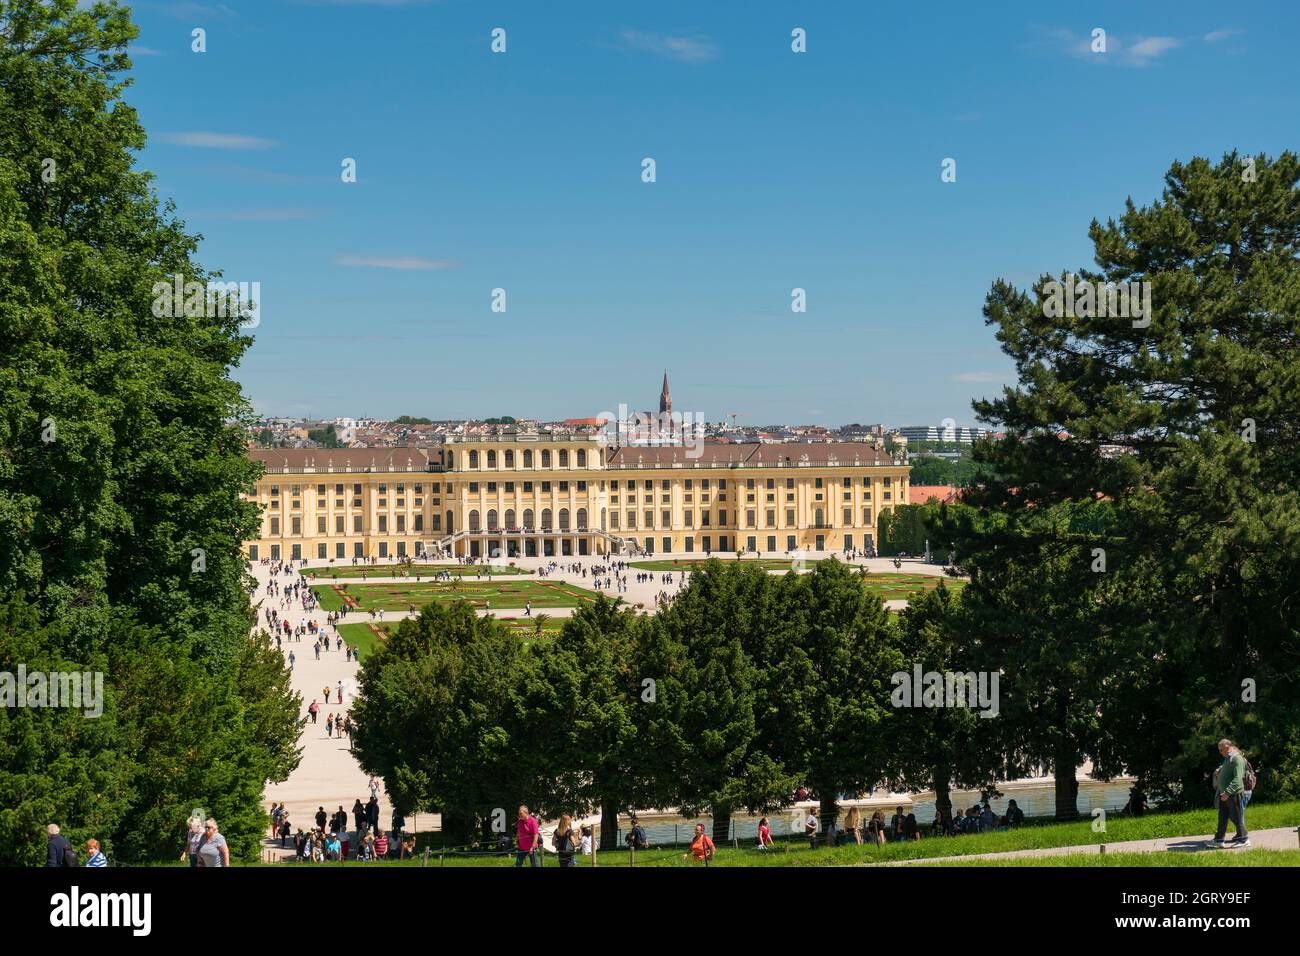 31 de mayo de 2019 Viena, Austria - Edificio palacio Schonbrunn entre jardines. Día de primavera nublado Foto de stock